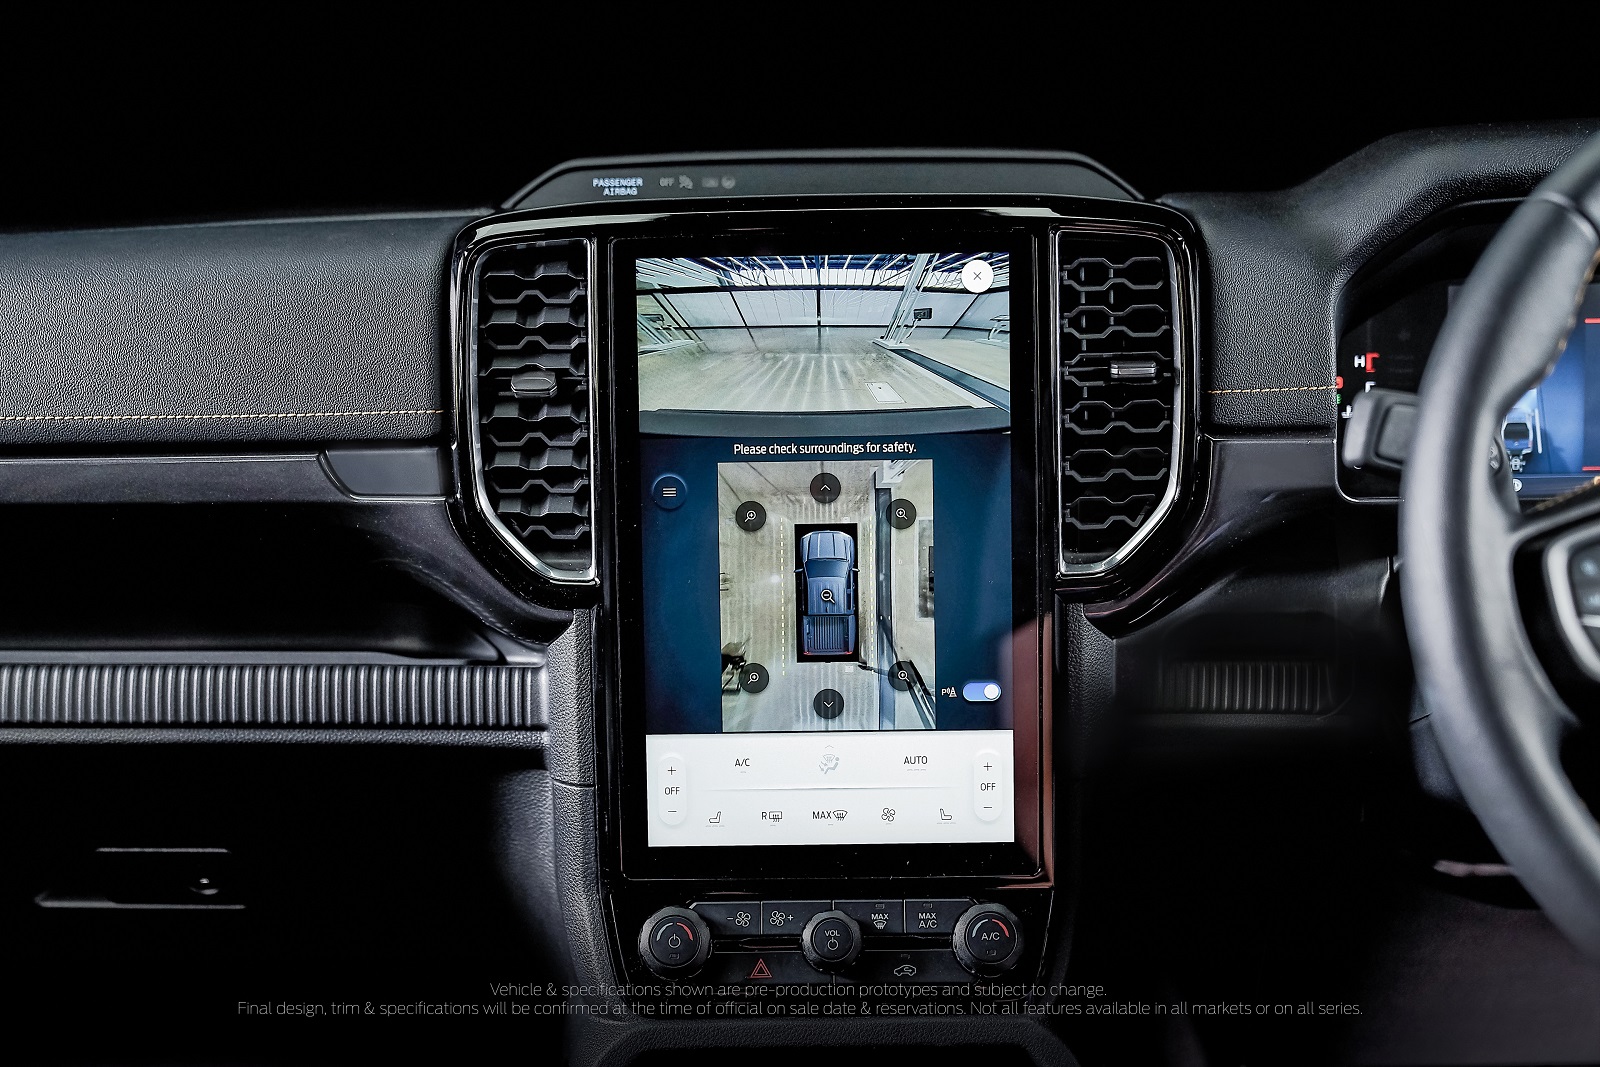 Ford Ranger thế hệ mới: Nội thất tiện dụng & tích hợp các công nghệ tiên tiến